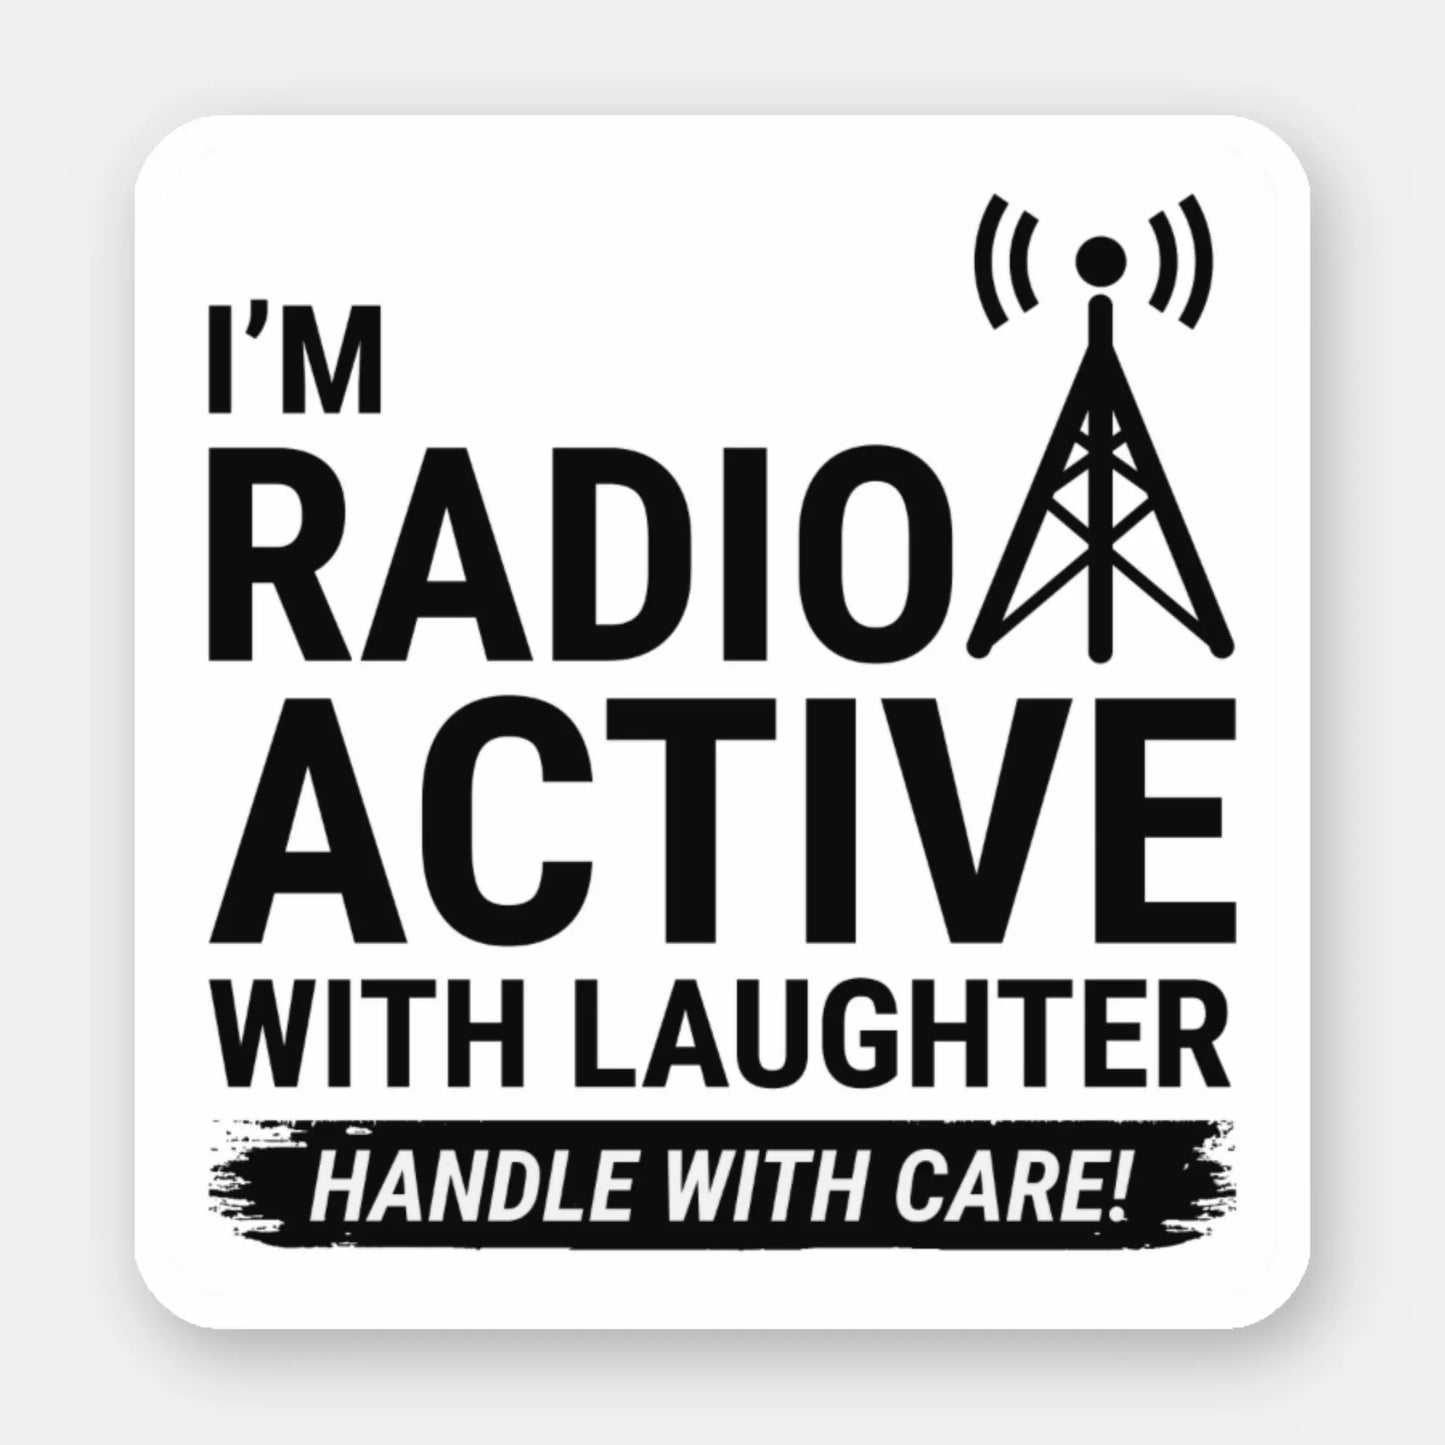 Ham Radio Operator Sticker